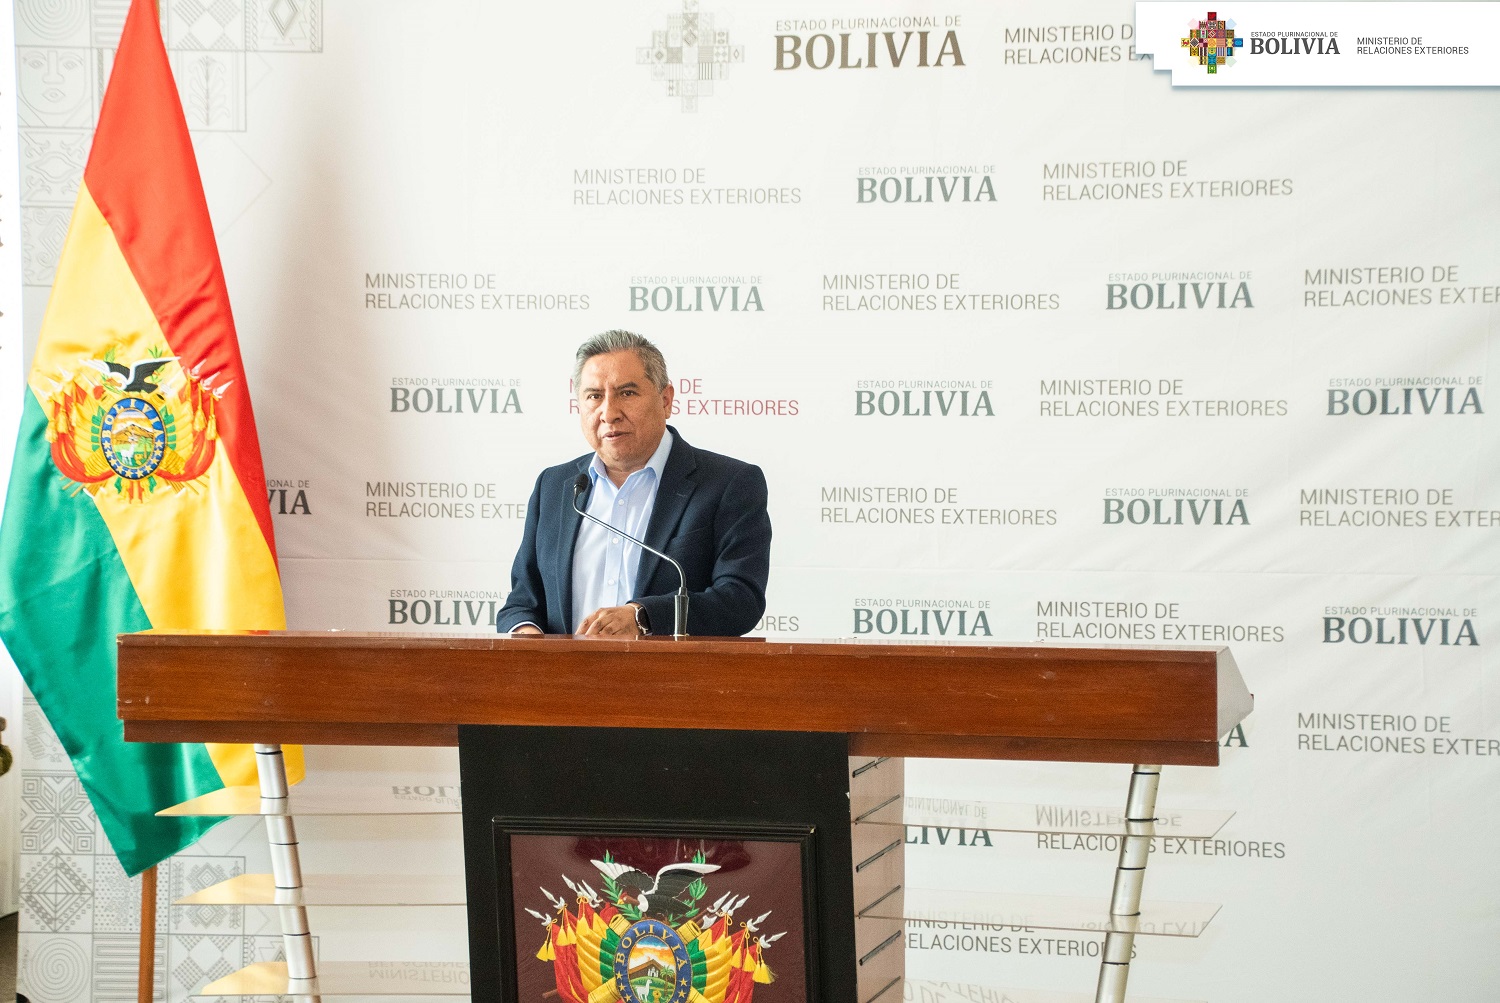 Cancillería inicia agenda cultural que destaca el talento artístico boliviano